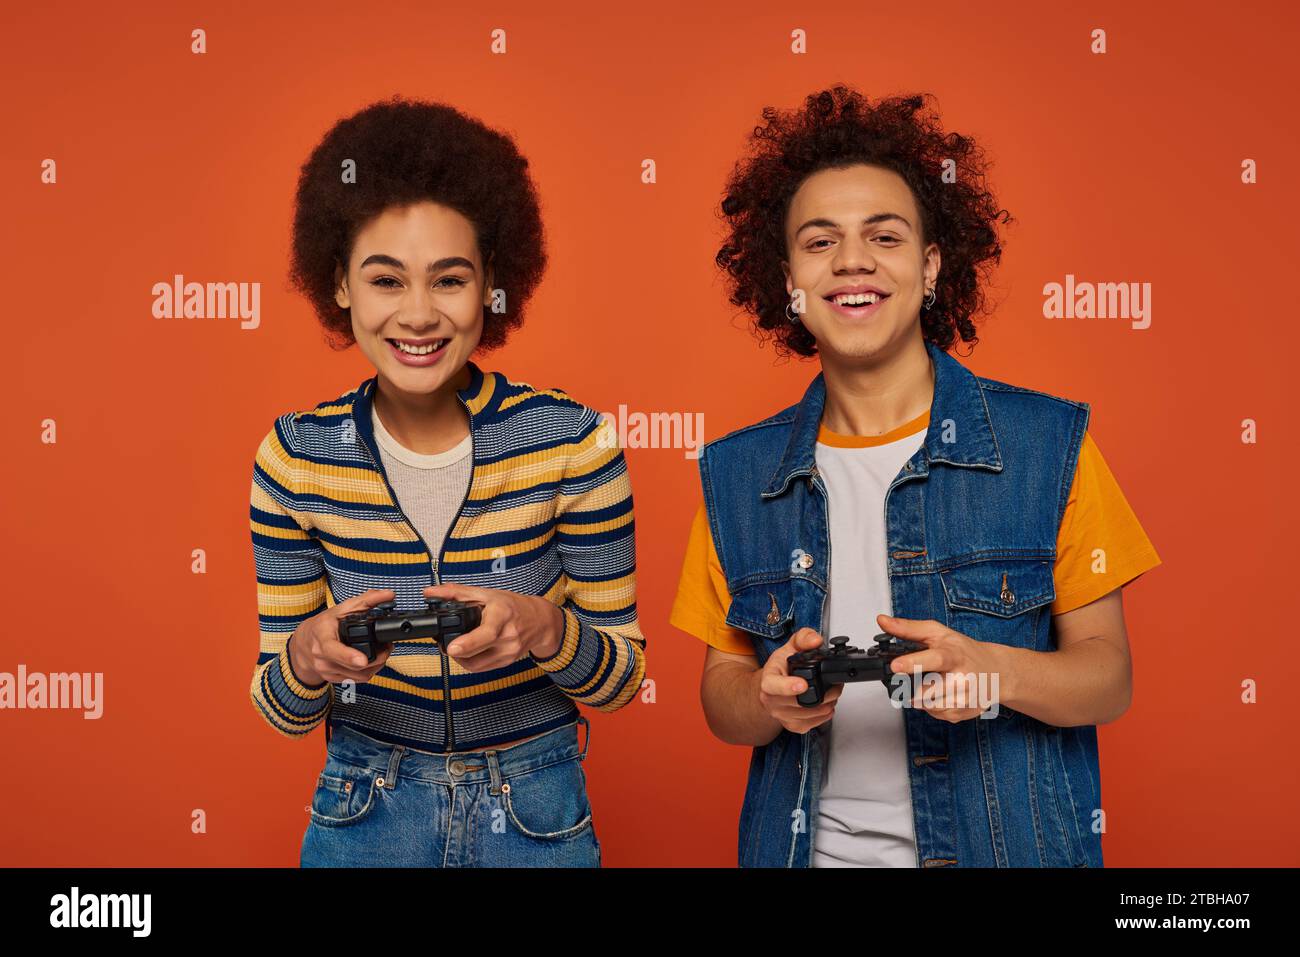 fratello e sorella afro-americani dall'aspetto gradevole che giocano ai videogiochi con joystick, concetto familiare Foto Stock